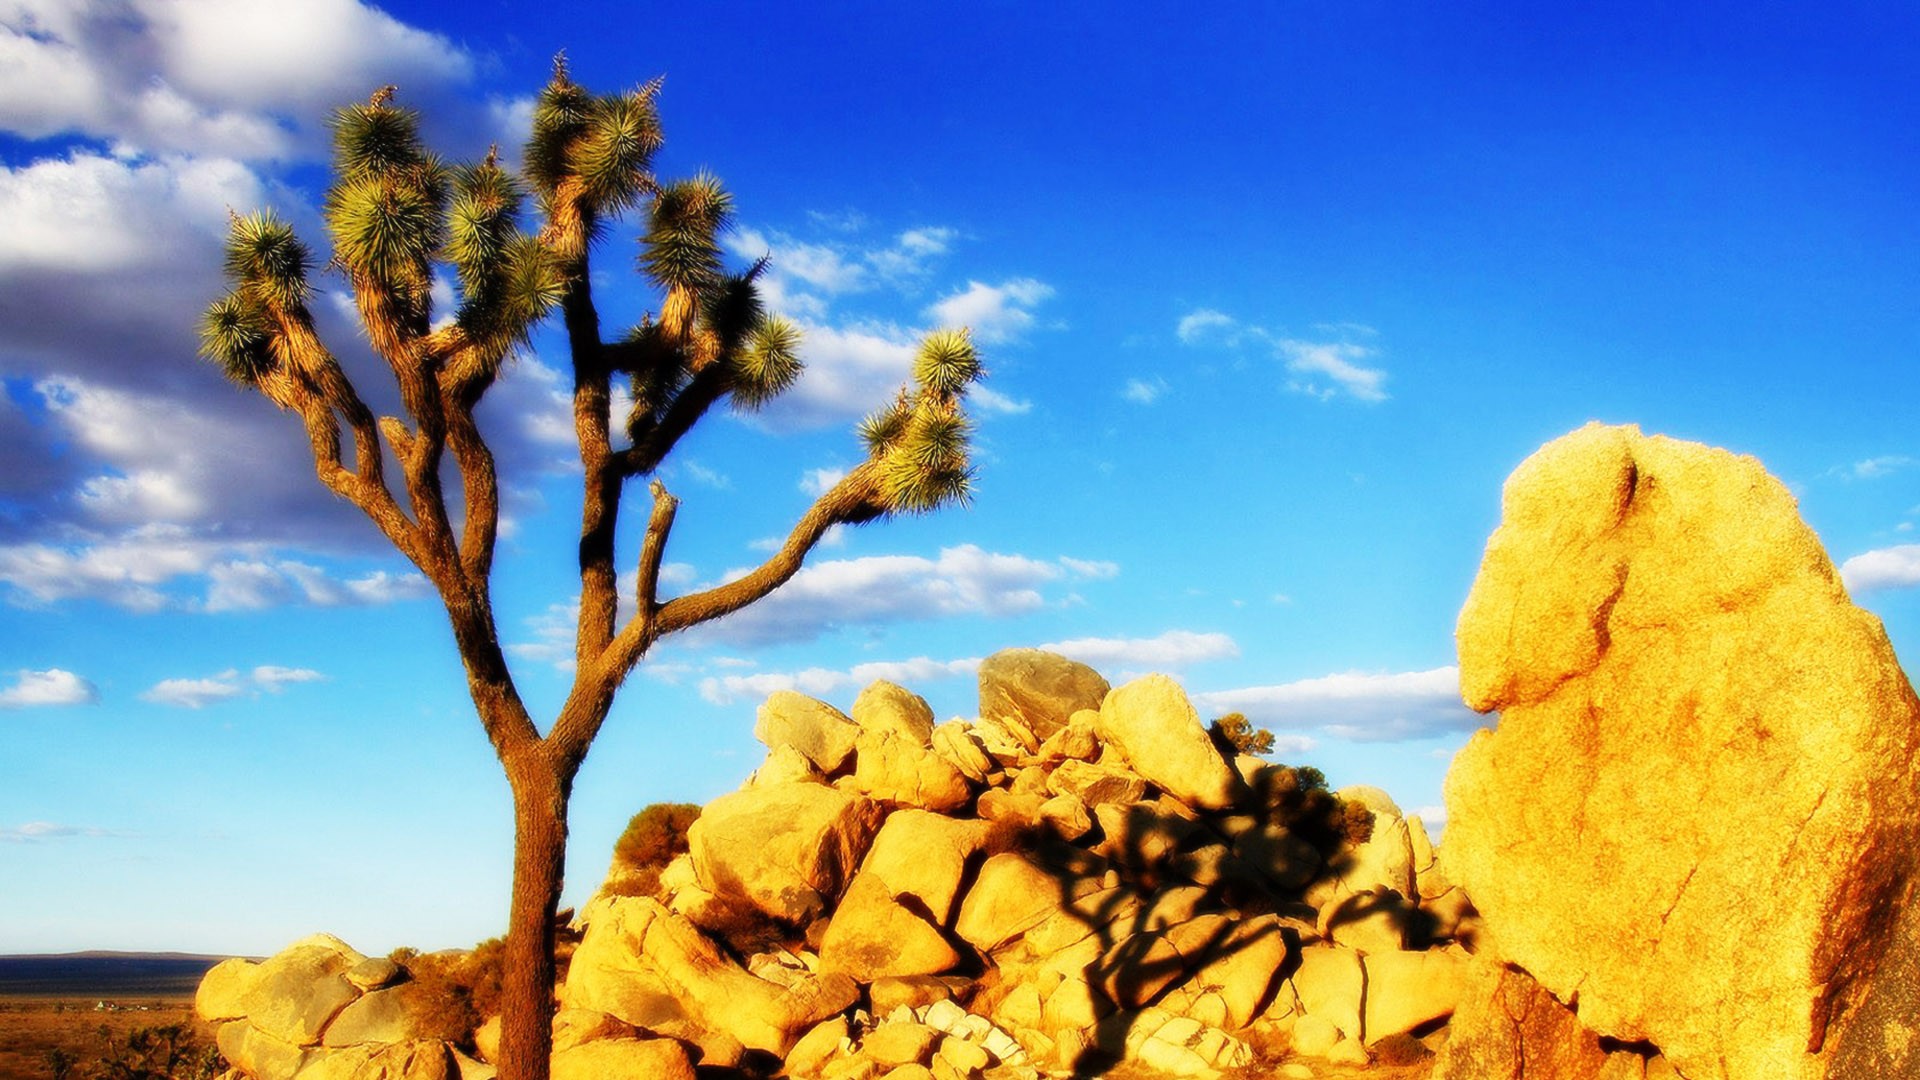 California Mojave Desert , HD Wallpaper & Backgrounds